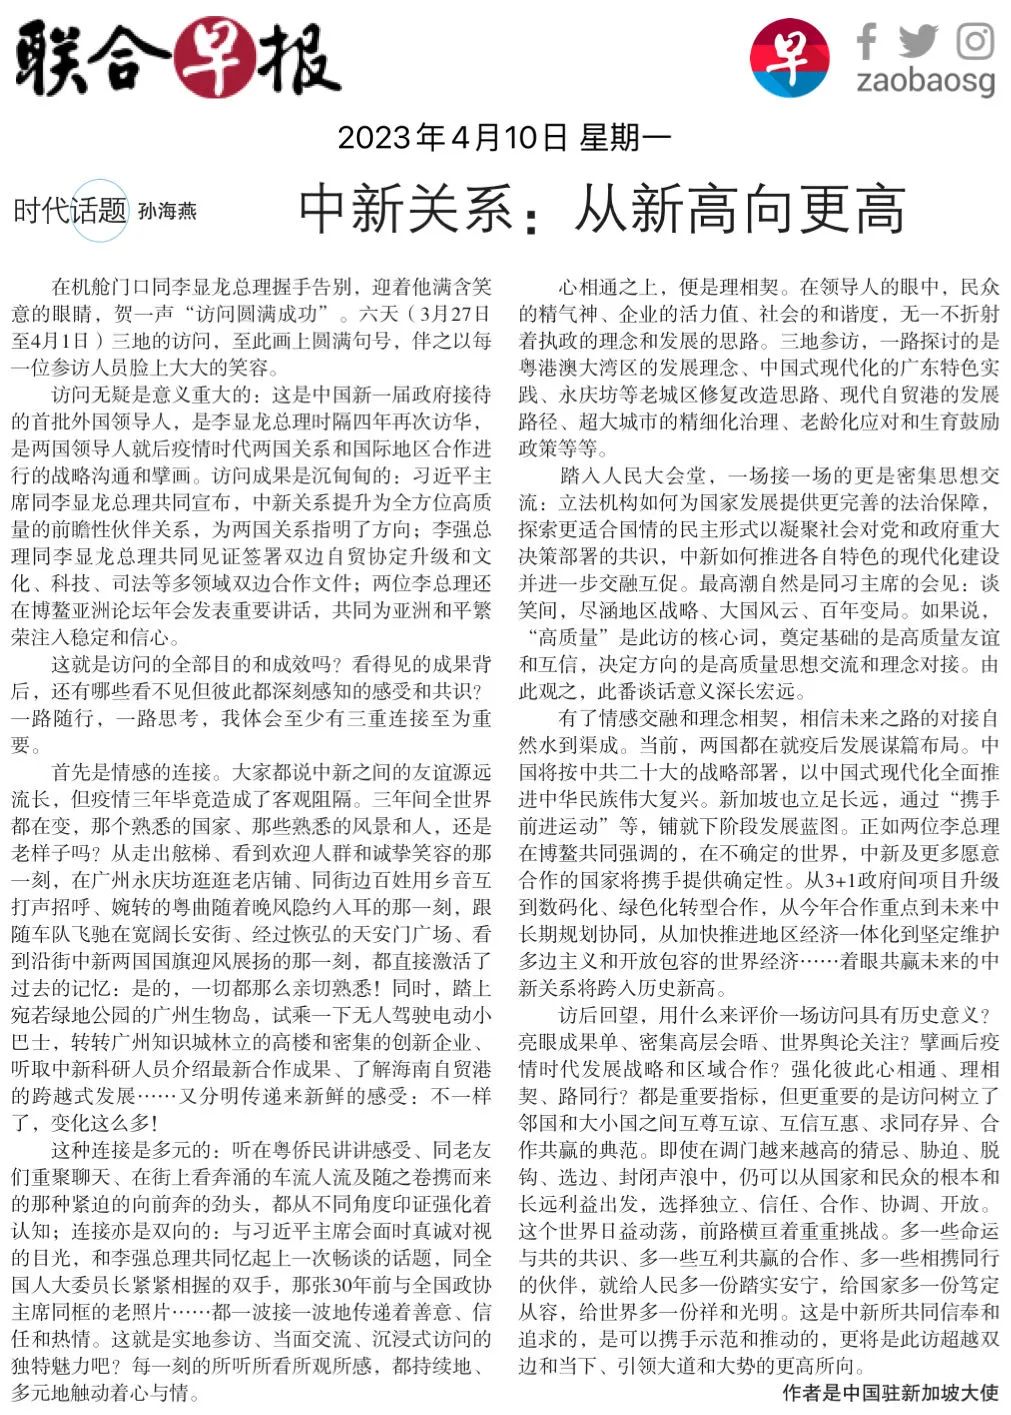 孙海燕大使在《联合早报》发表题为《中新关系：从新高向更高》的署名文章 image